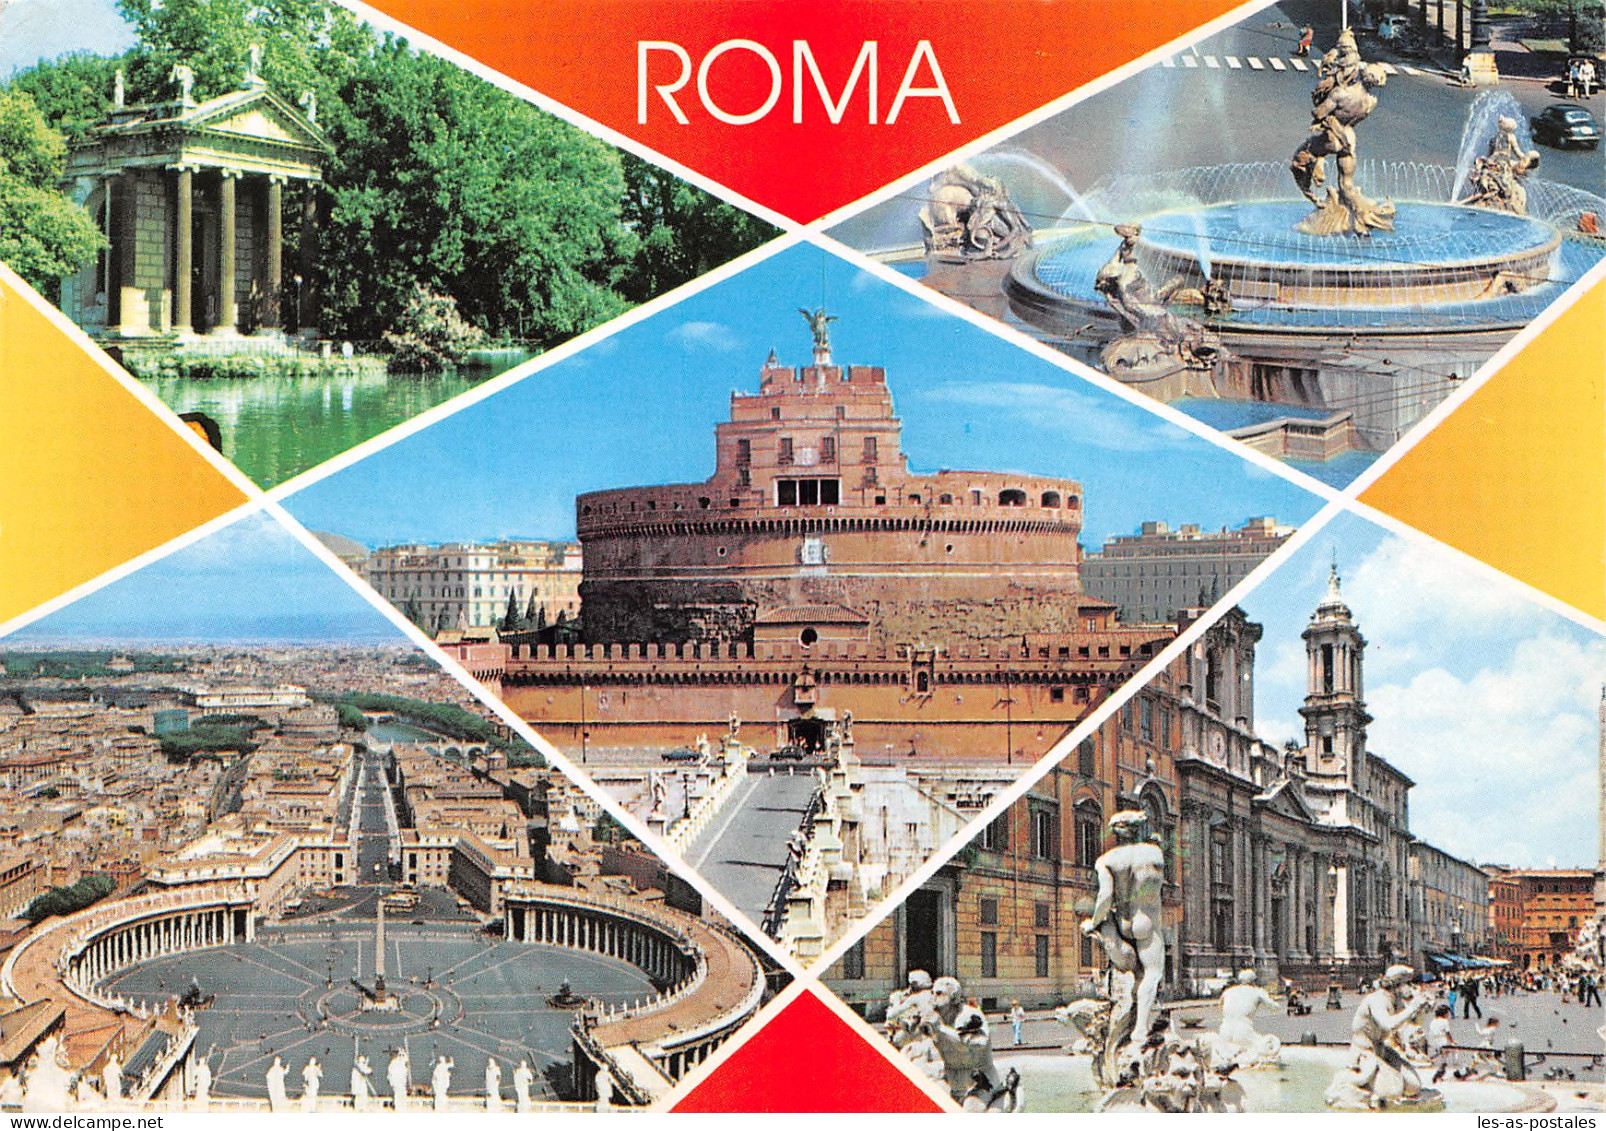 Italie ROMA VILLA BORGHESE - Andere Monumente & Gebäude